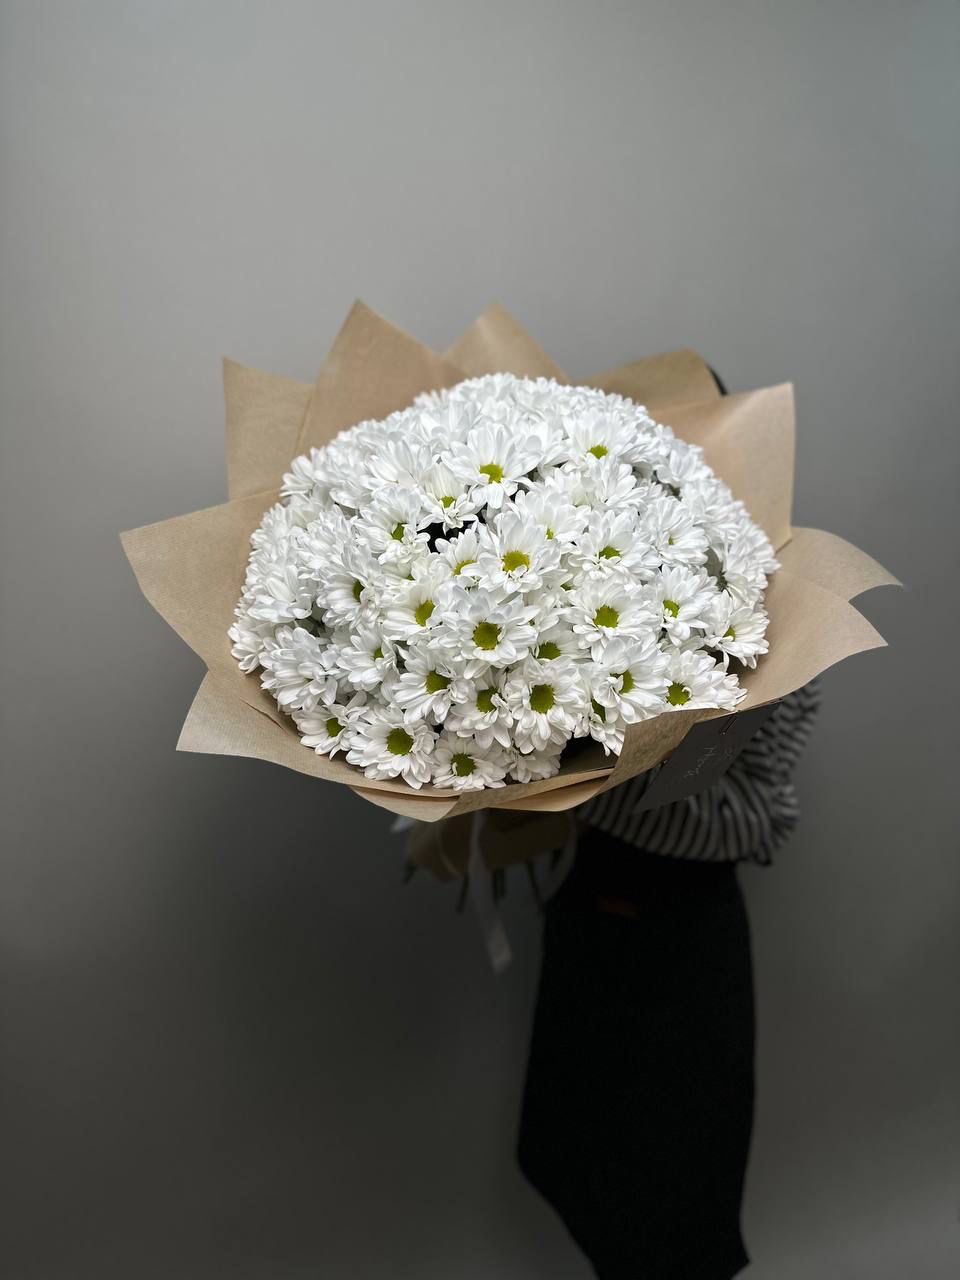 Букет с хризантемой- 25шт | Цветы в Костроме | ул. Сенная, д. 26 - Самые  стильные букеты в городе